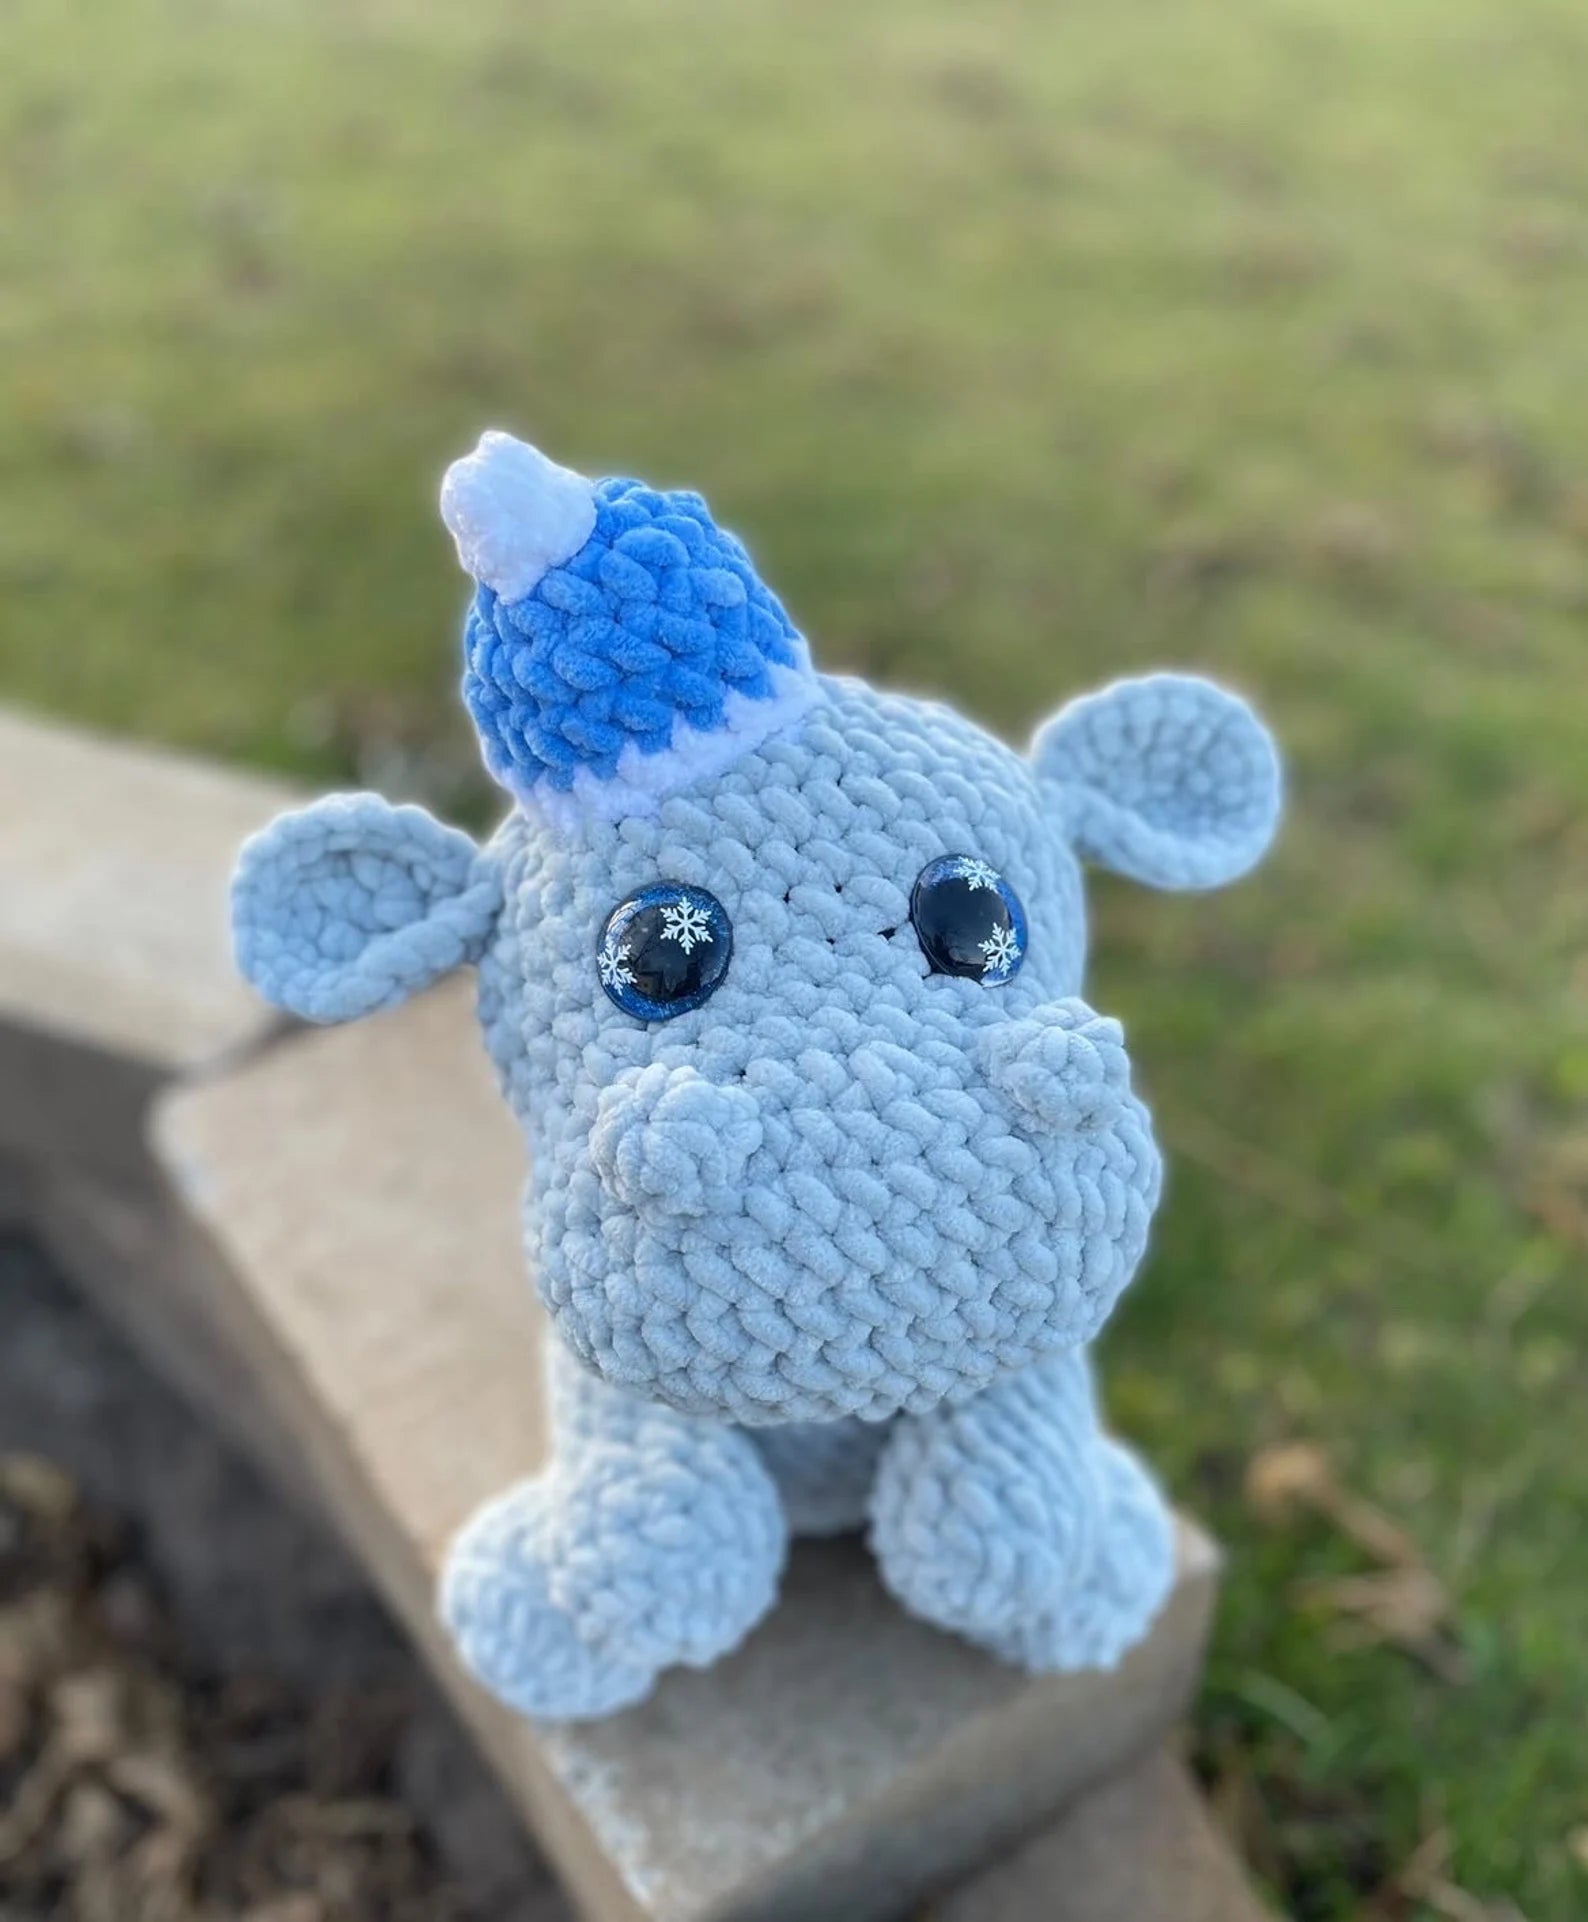 Hippo Crochet Pattern